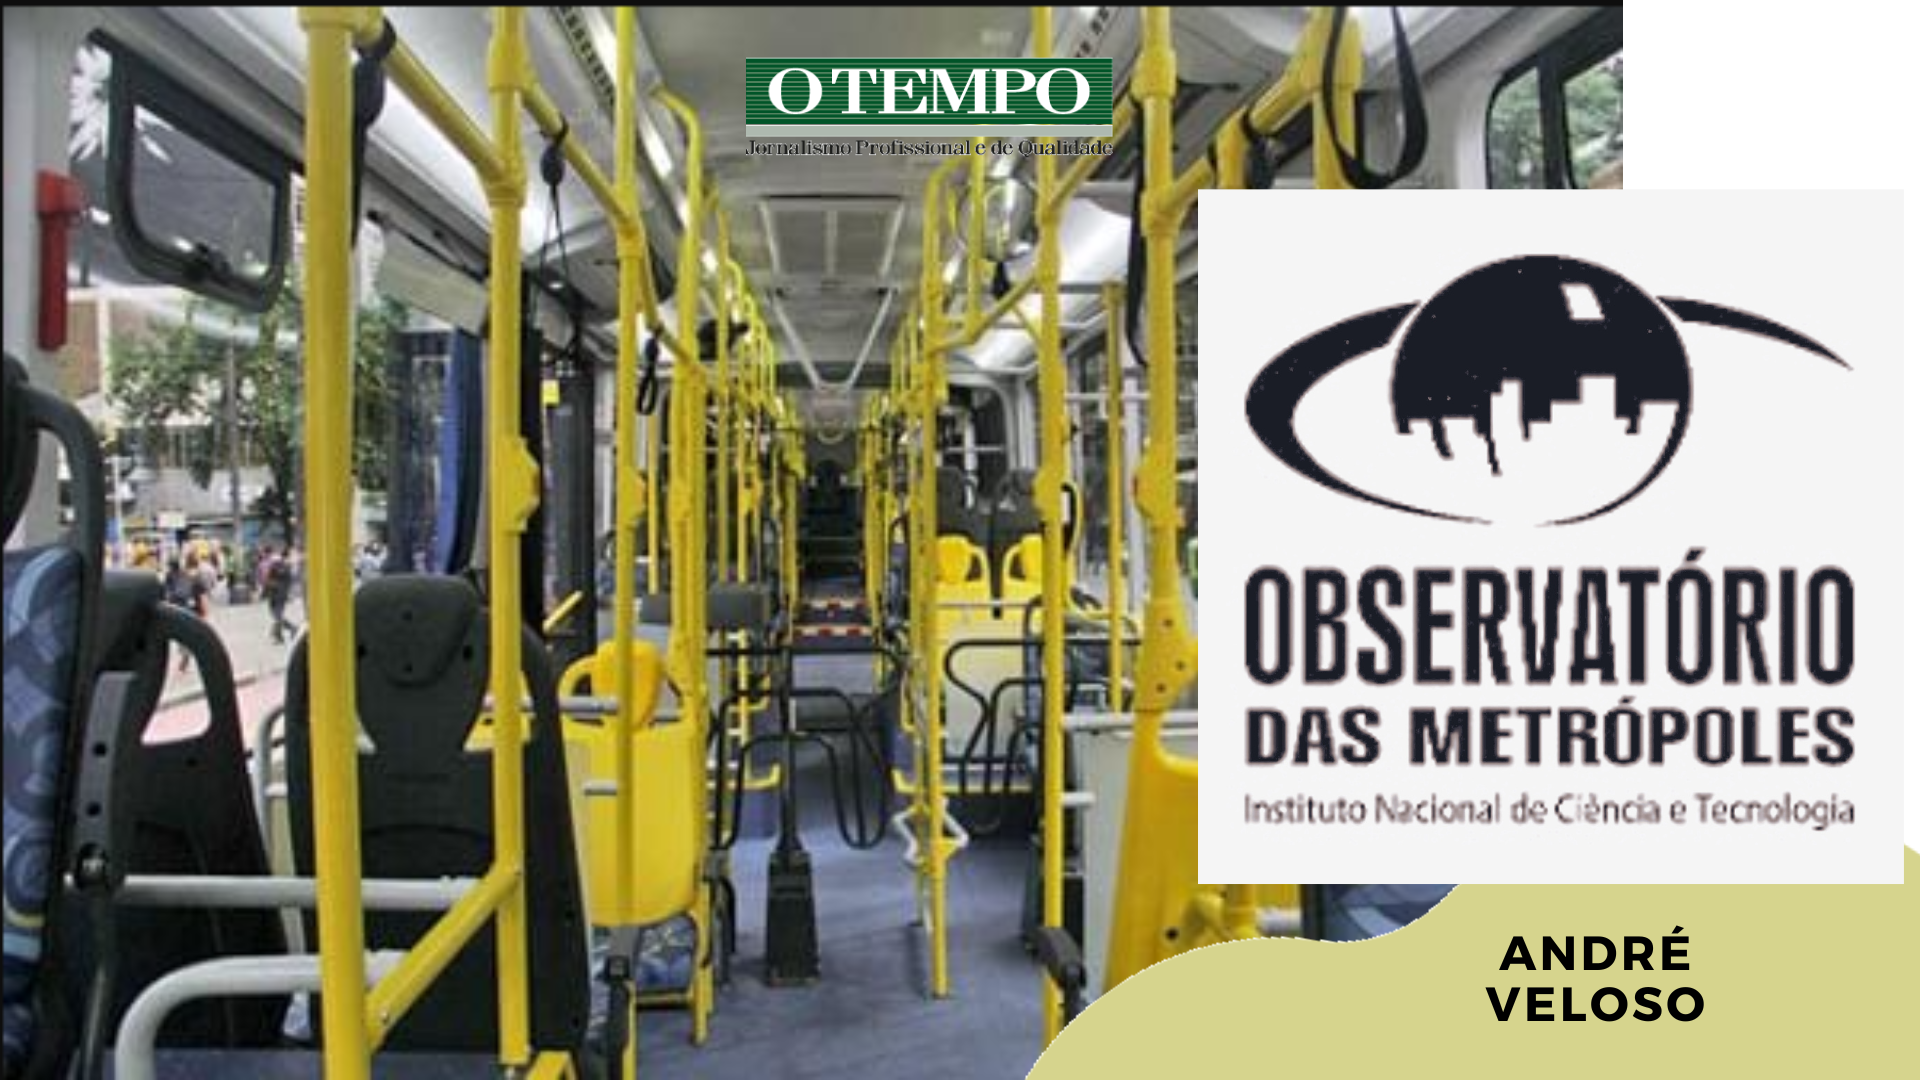 Roleta de um ônibus de transporte coletivo urbano de Belo Horizonte